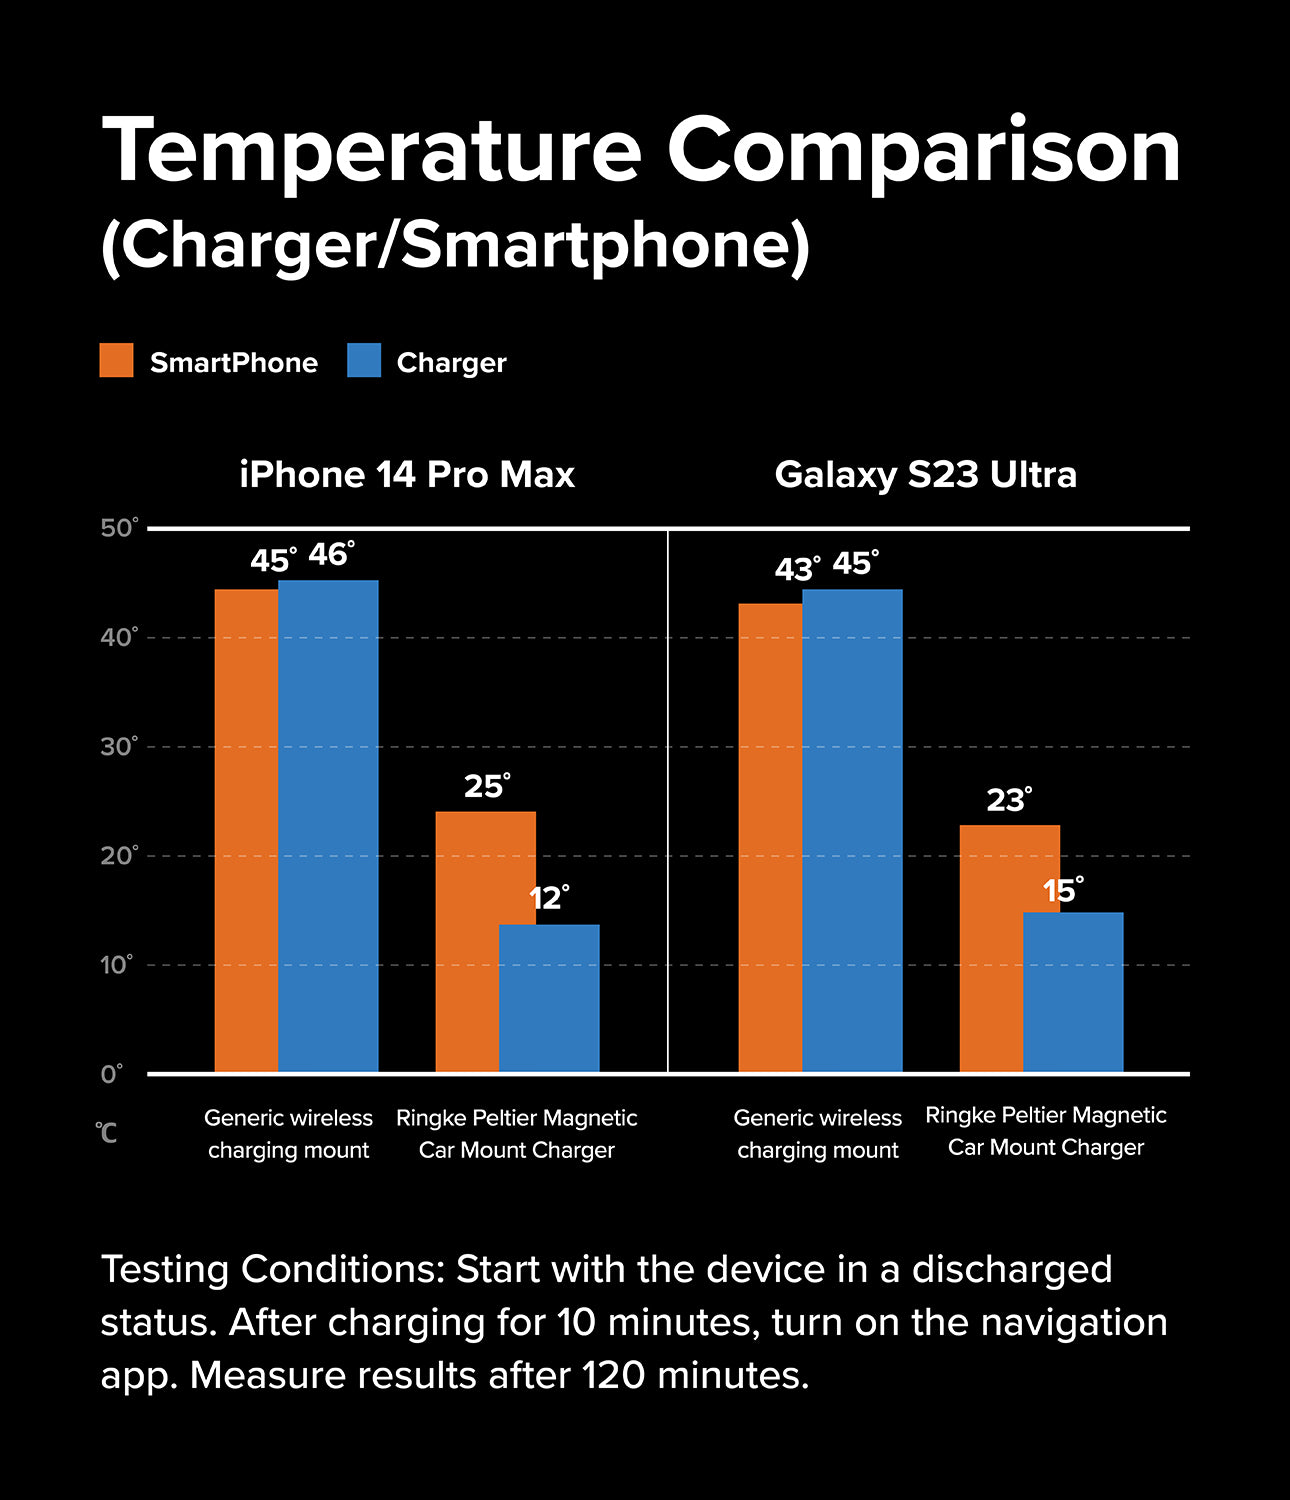 Ringke Peltier Magnetic Car Charger Mount - Temperature Comparison